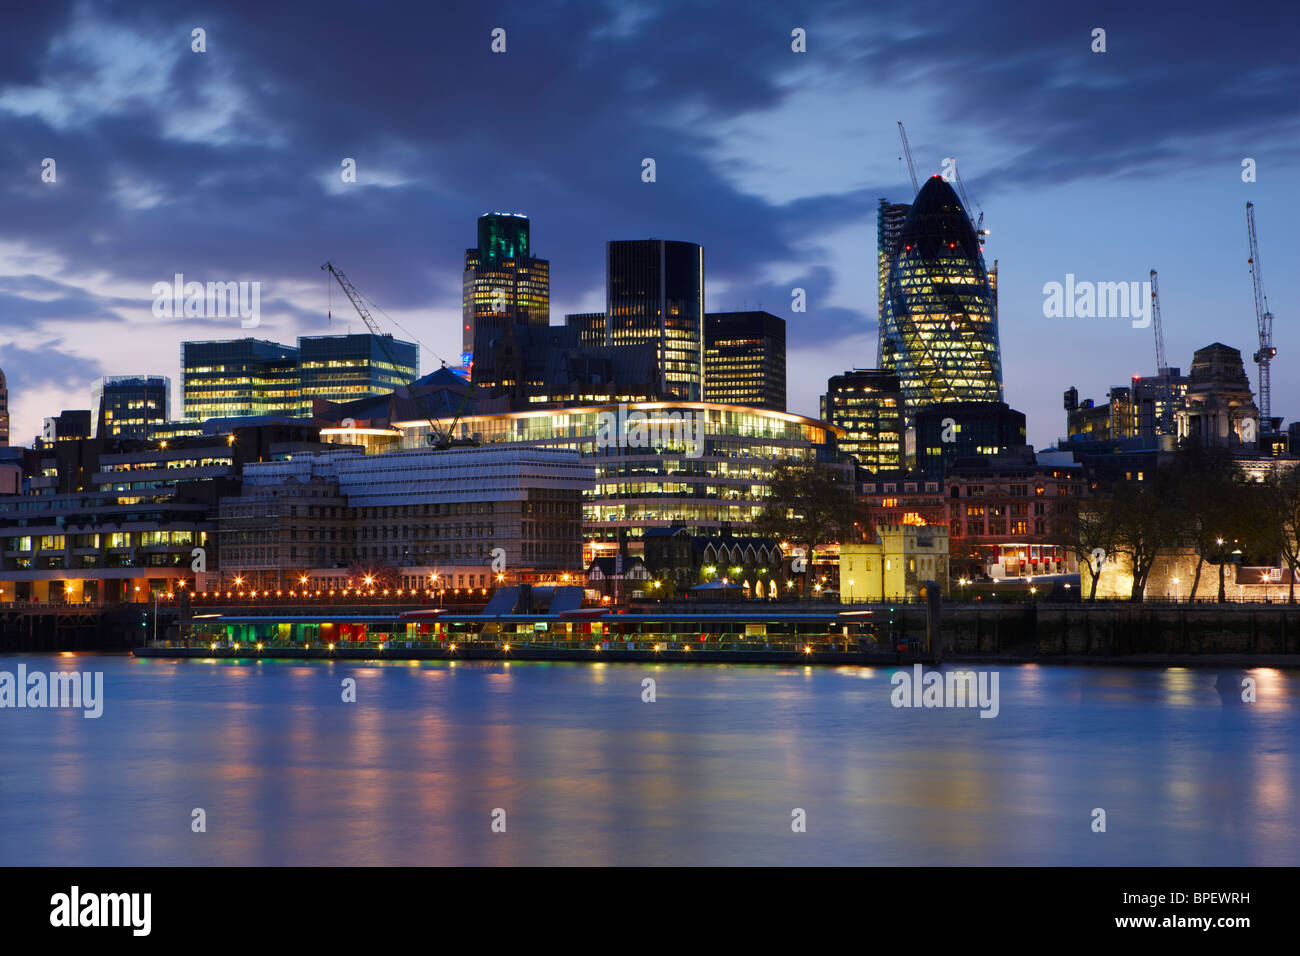 Vue sur la Tamise de nuit à la recherche vers le coeur financier de la ville de Londres Banque D'Images